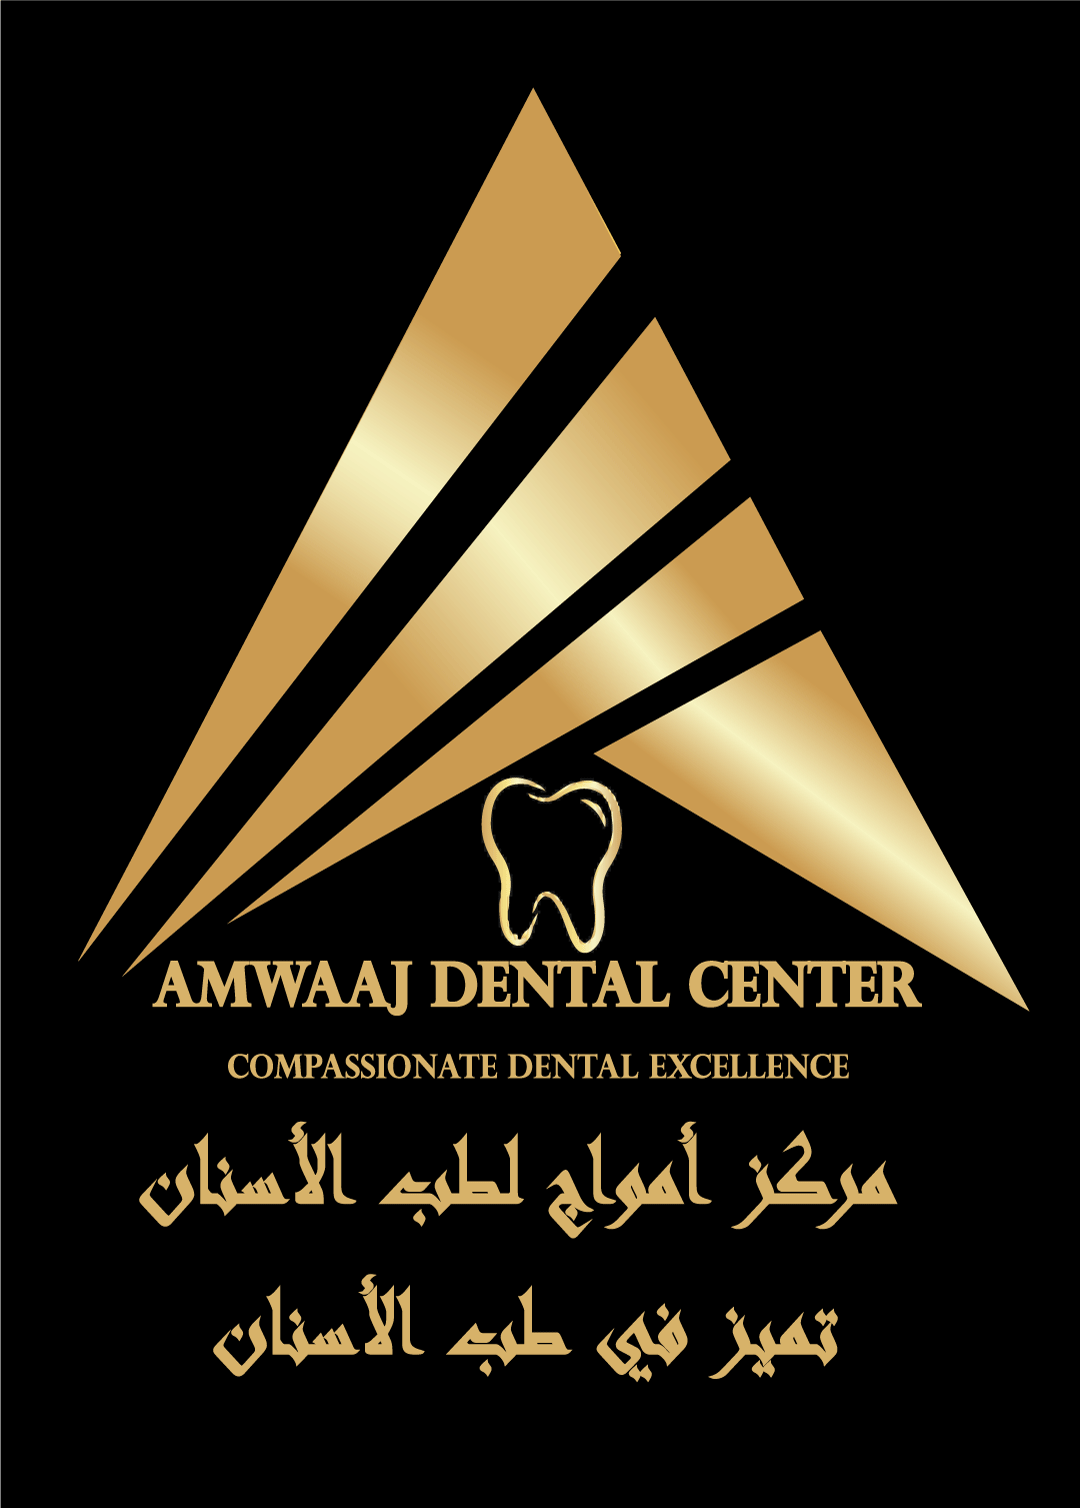 Amwaaj Dental Center